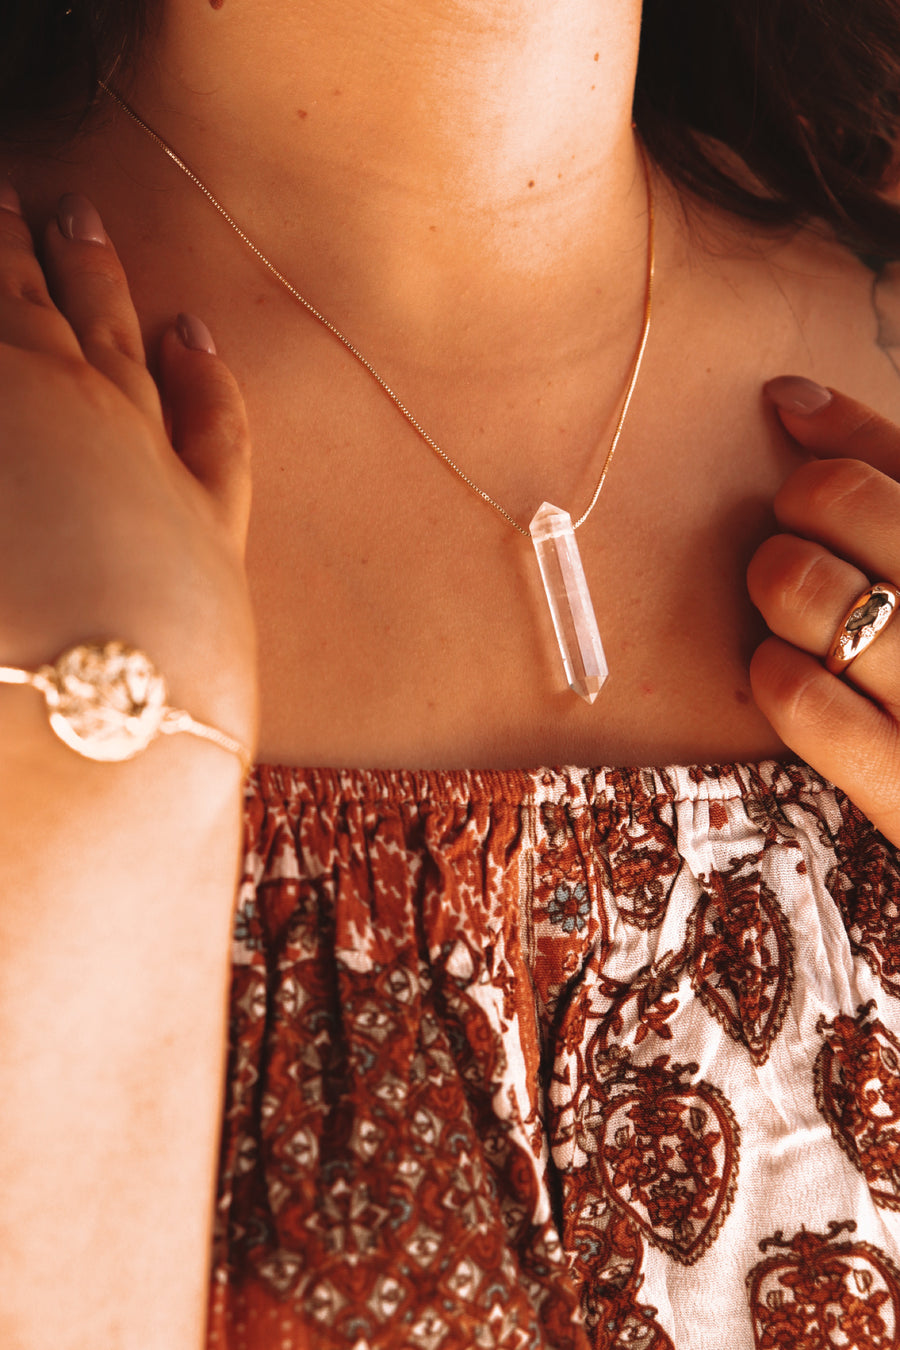 Goddess amulet | Clear quartz point necklace